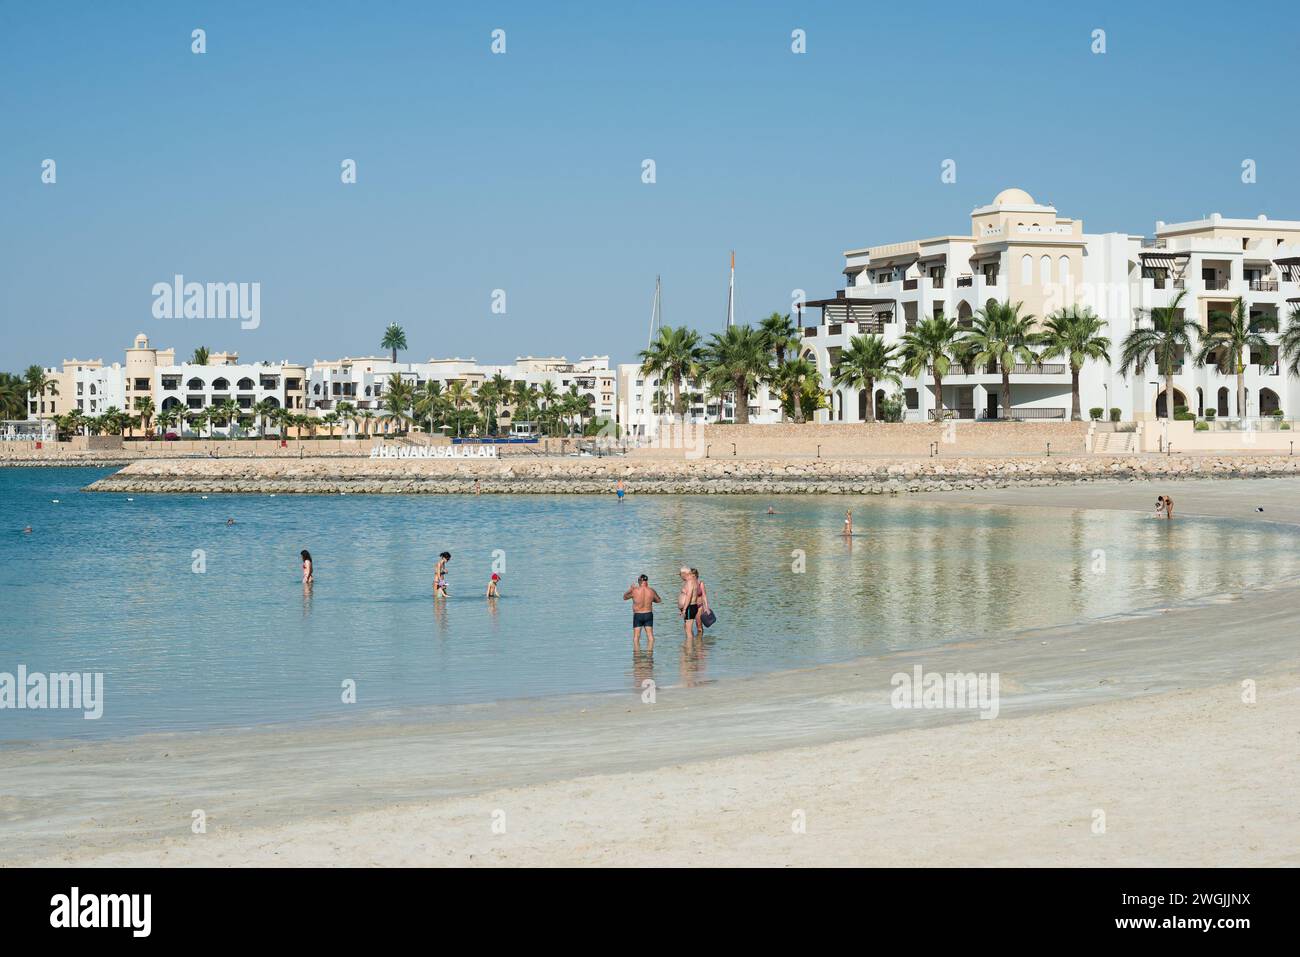 Hôtel Al Fanar, Salalah, Oman, Gouvernorat de Dhofar Banque D'Images